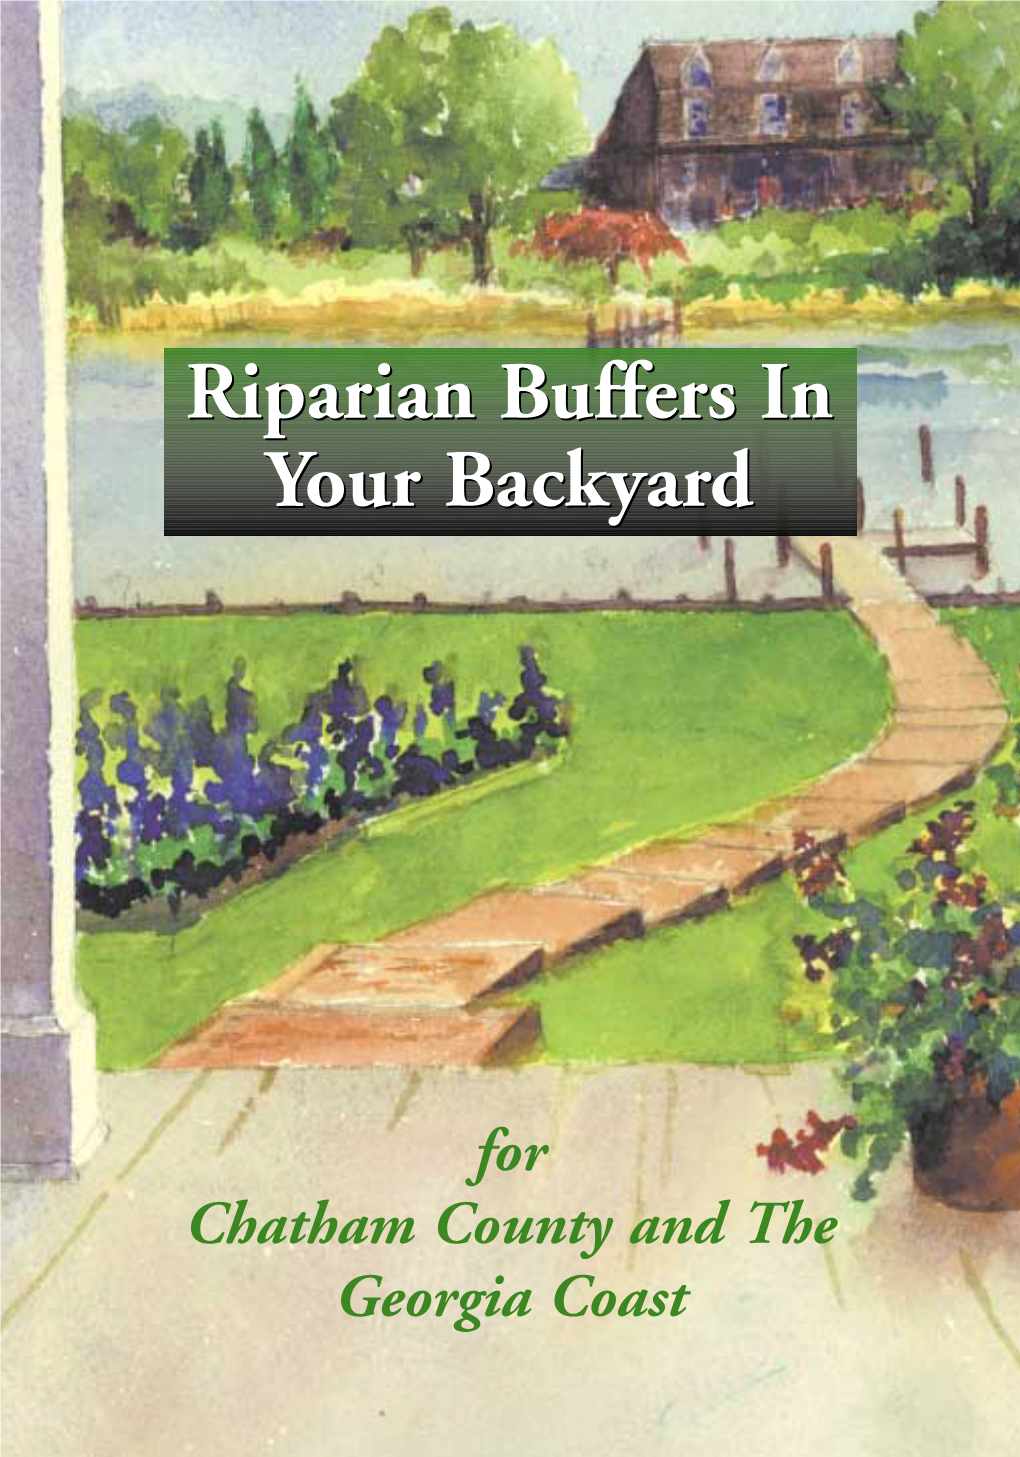 Riparian Buffers in Your Backyard